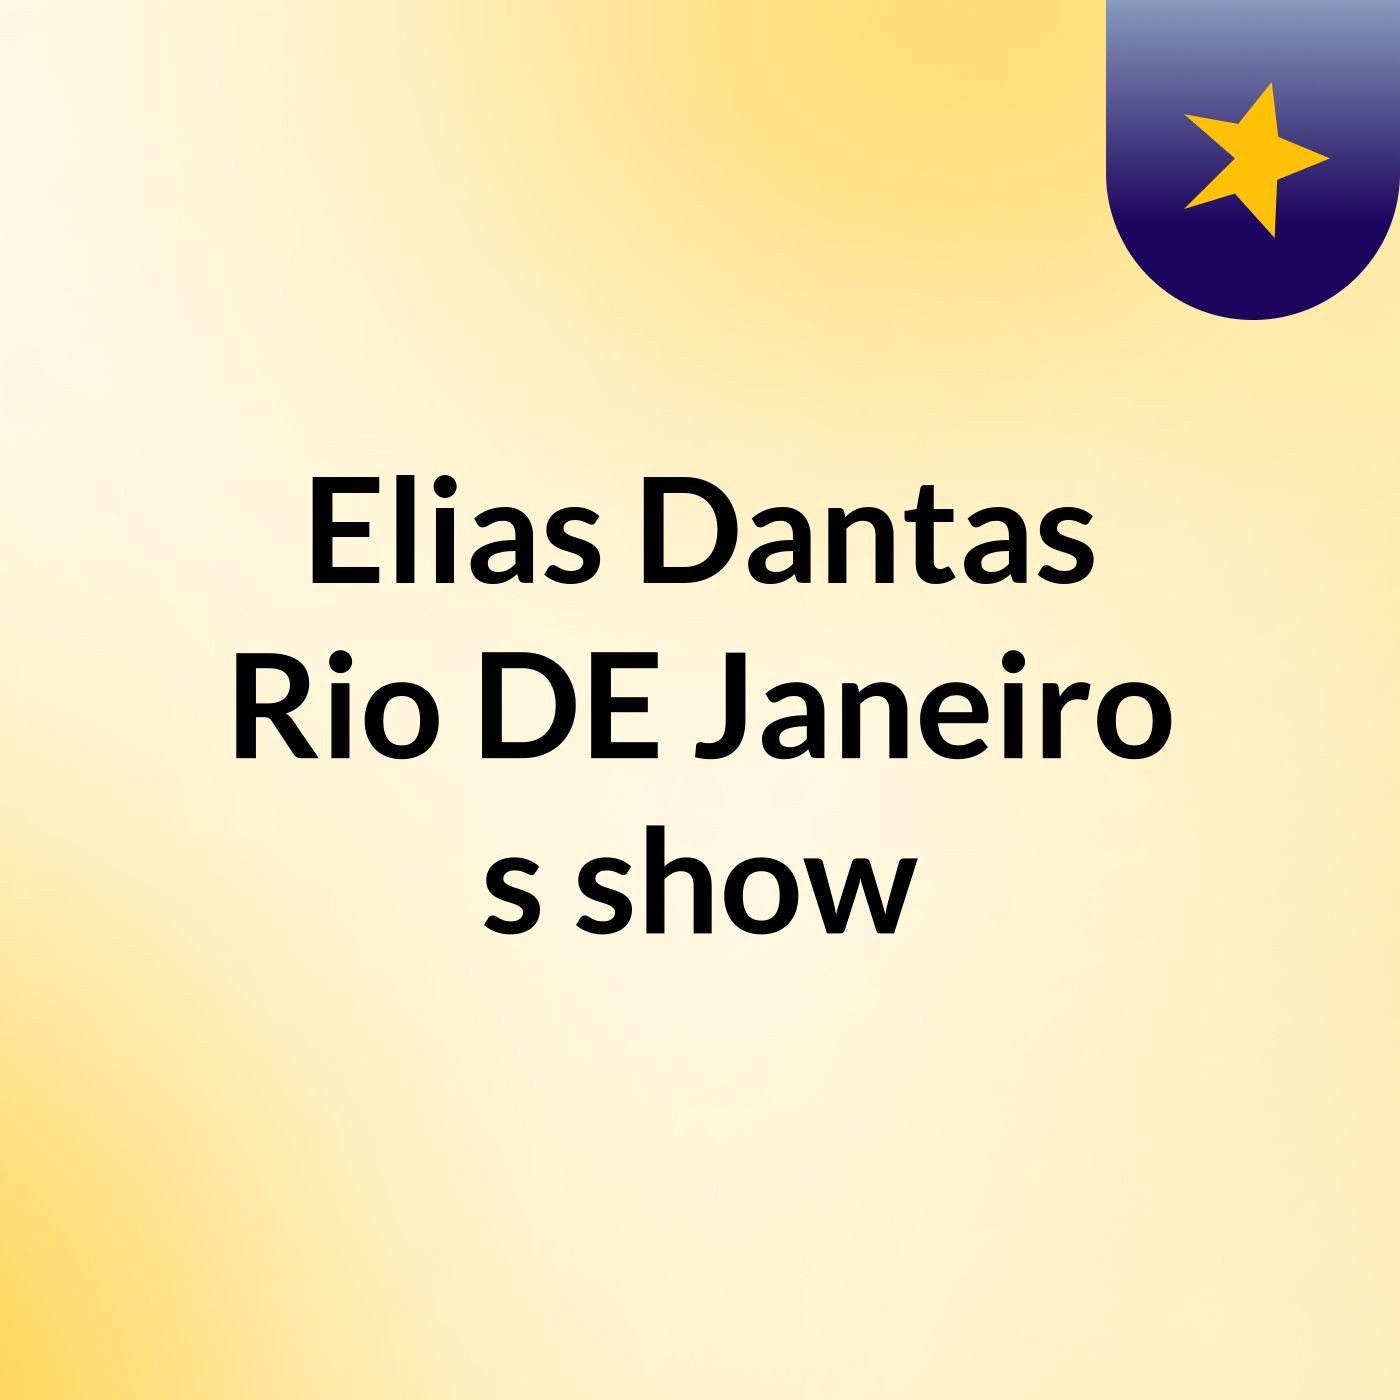 Elias Dantas Rio DE Janeiro's show